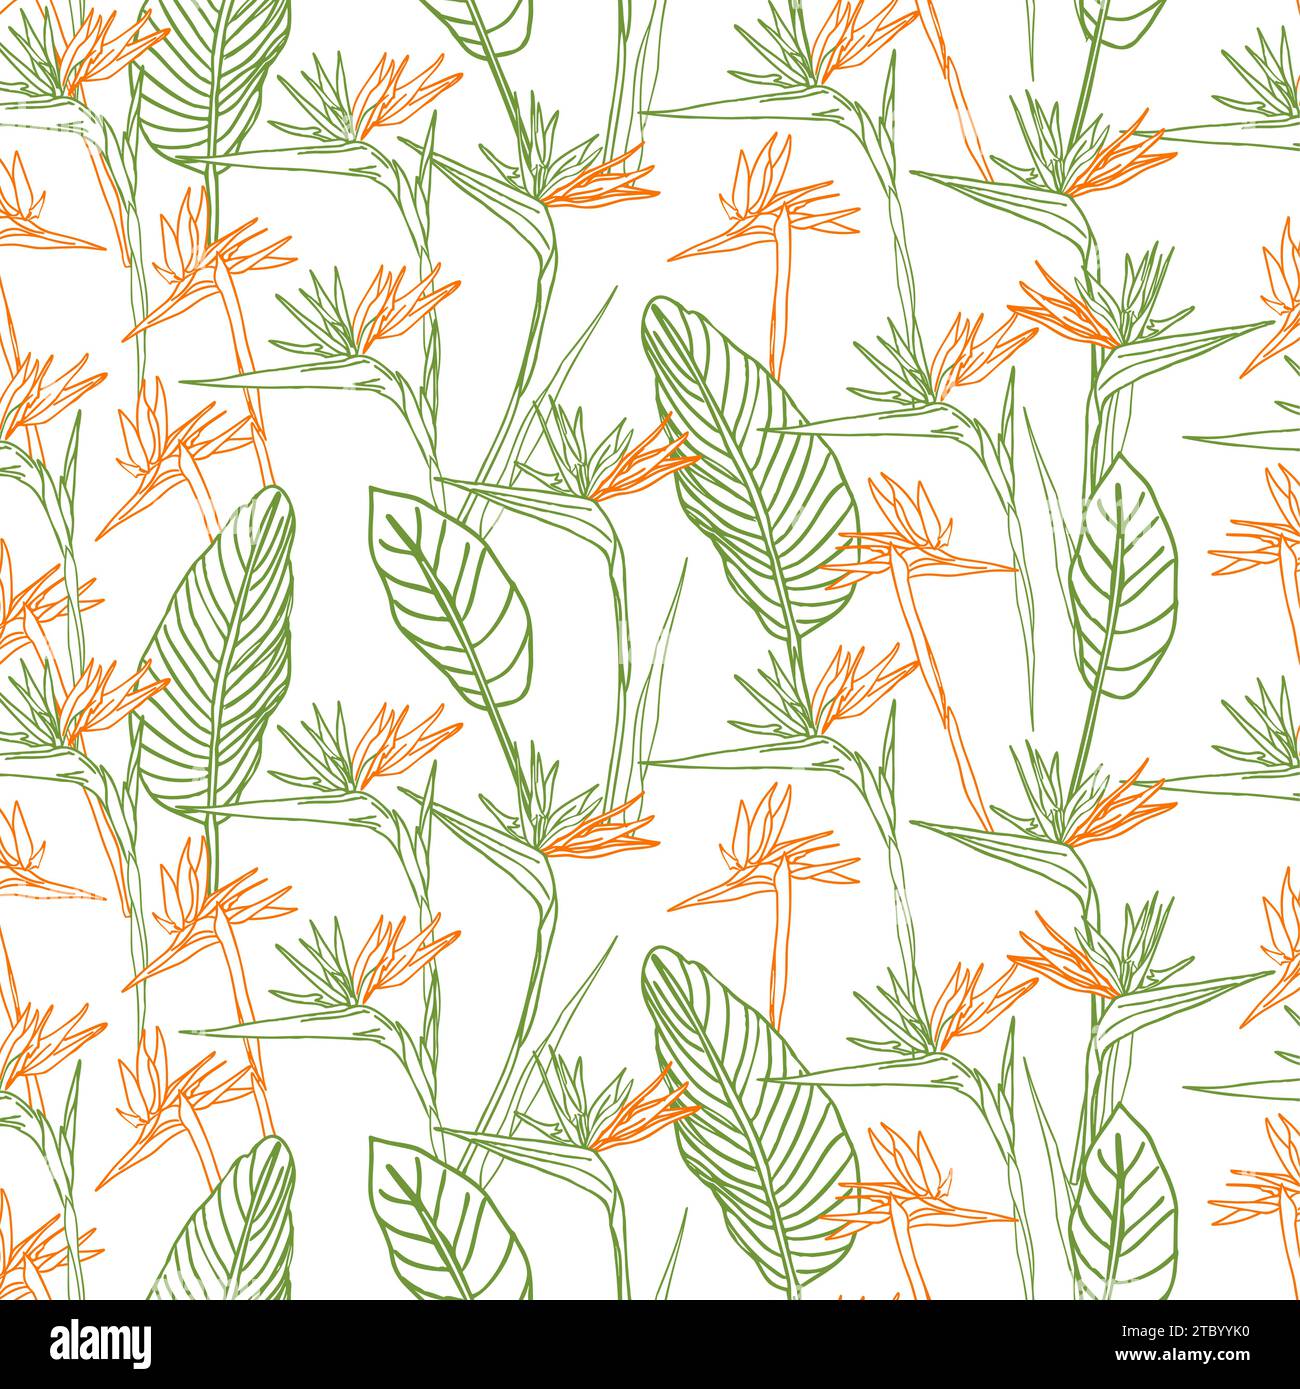 Oiseau de paradis fleur tropical strelitzia floral sans couture motif avec des couleurs vertes et orange. Fond vectoriel pour impressions, tissu, papiers peints, wr Illustration de Vecteur